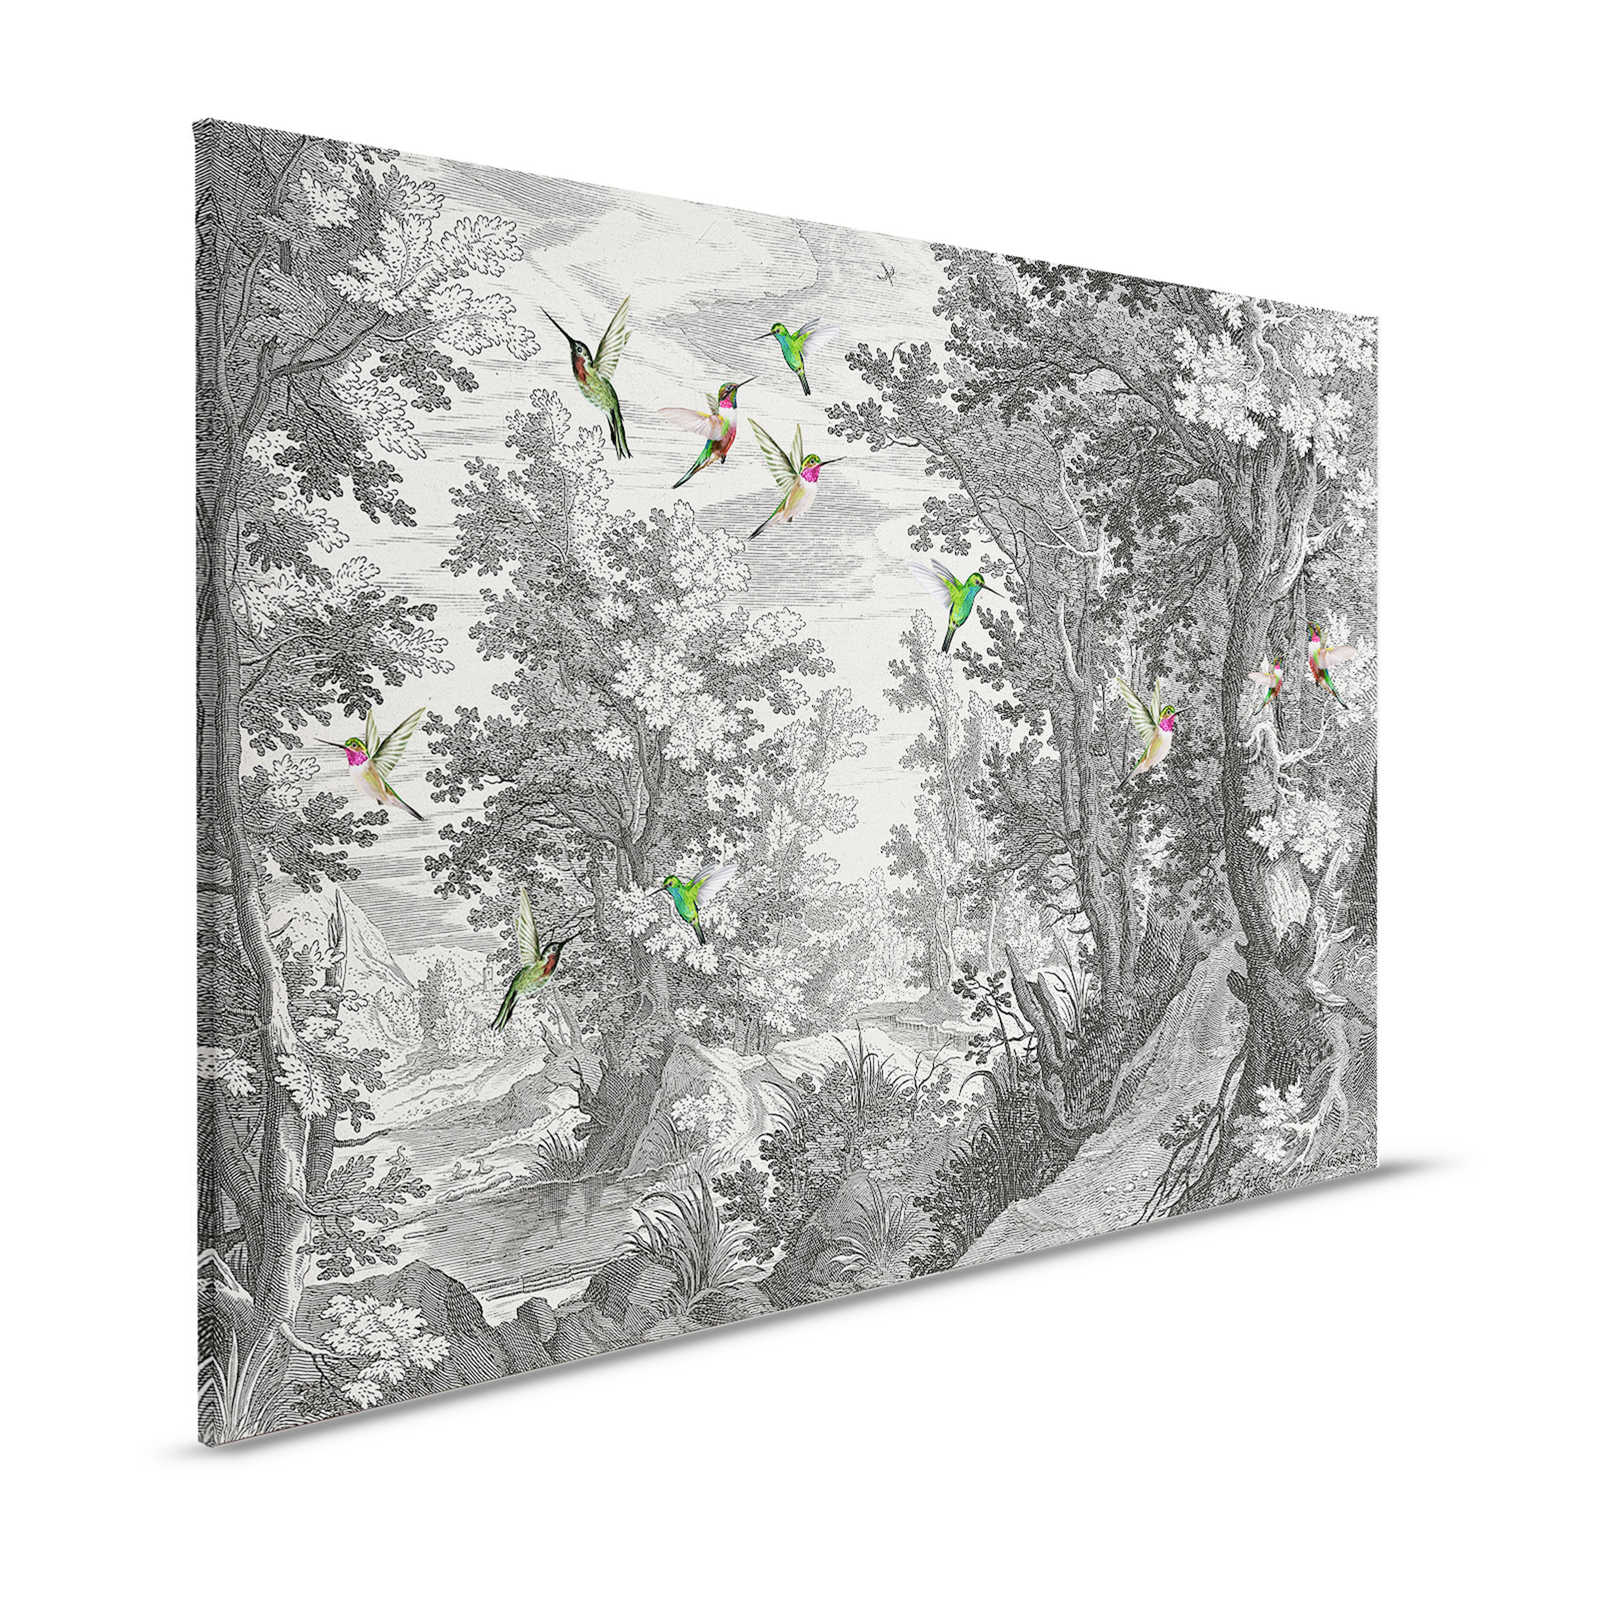 Fancy Forest 1 - Landschap canvas print met vogels - 1.20 m x 0.80 m
